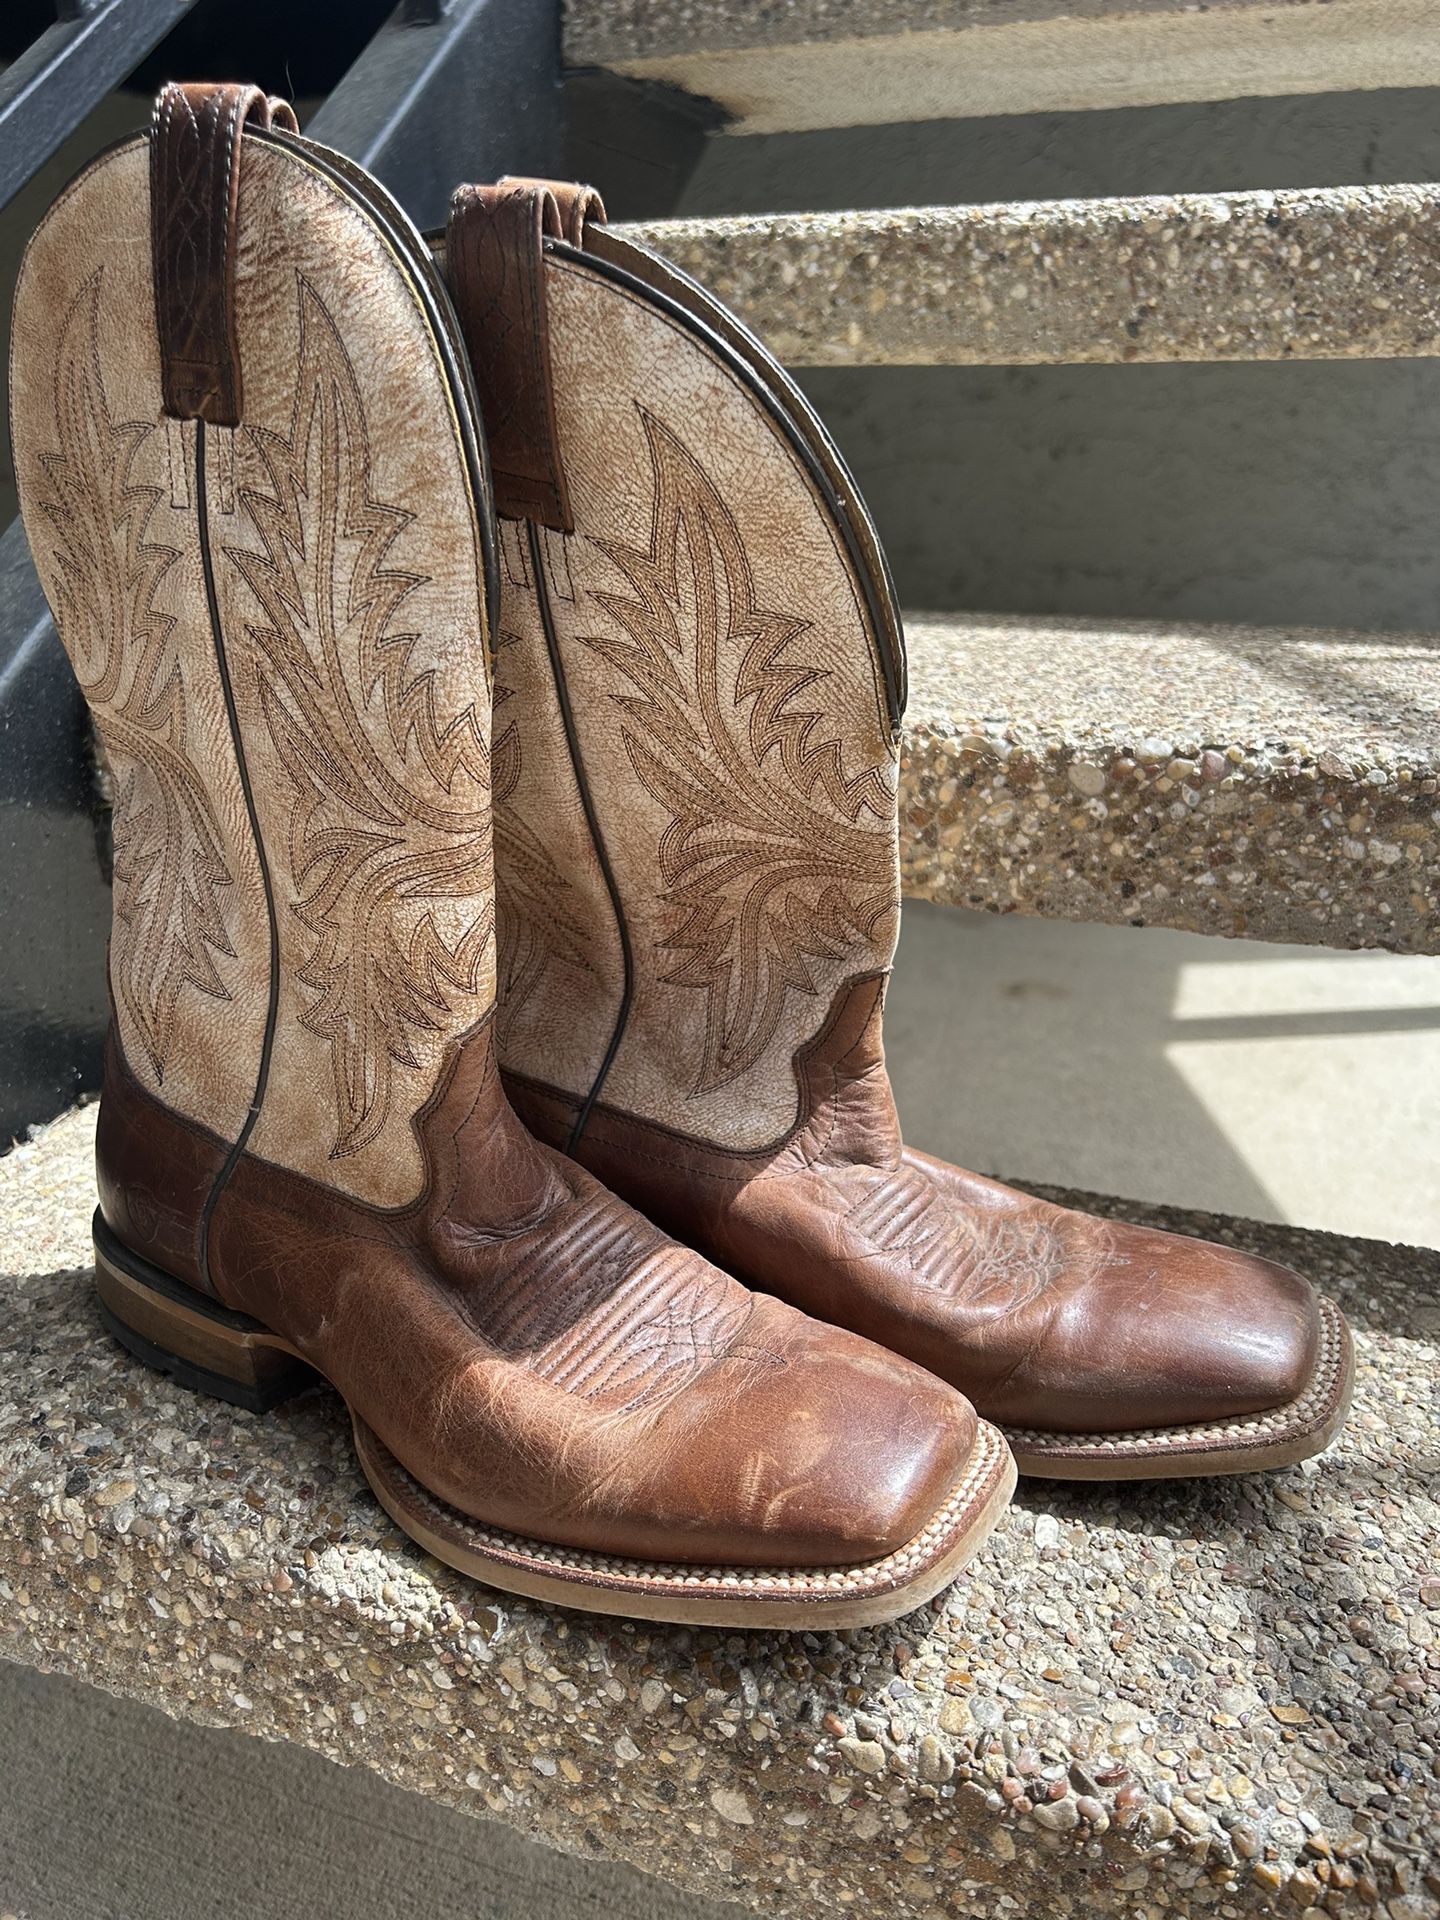 Ariat Men’s Cowboy Boots -NEW